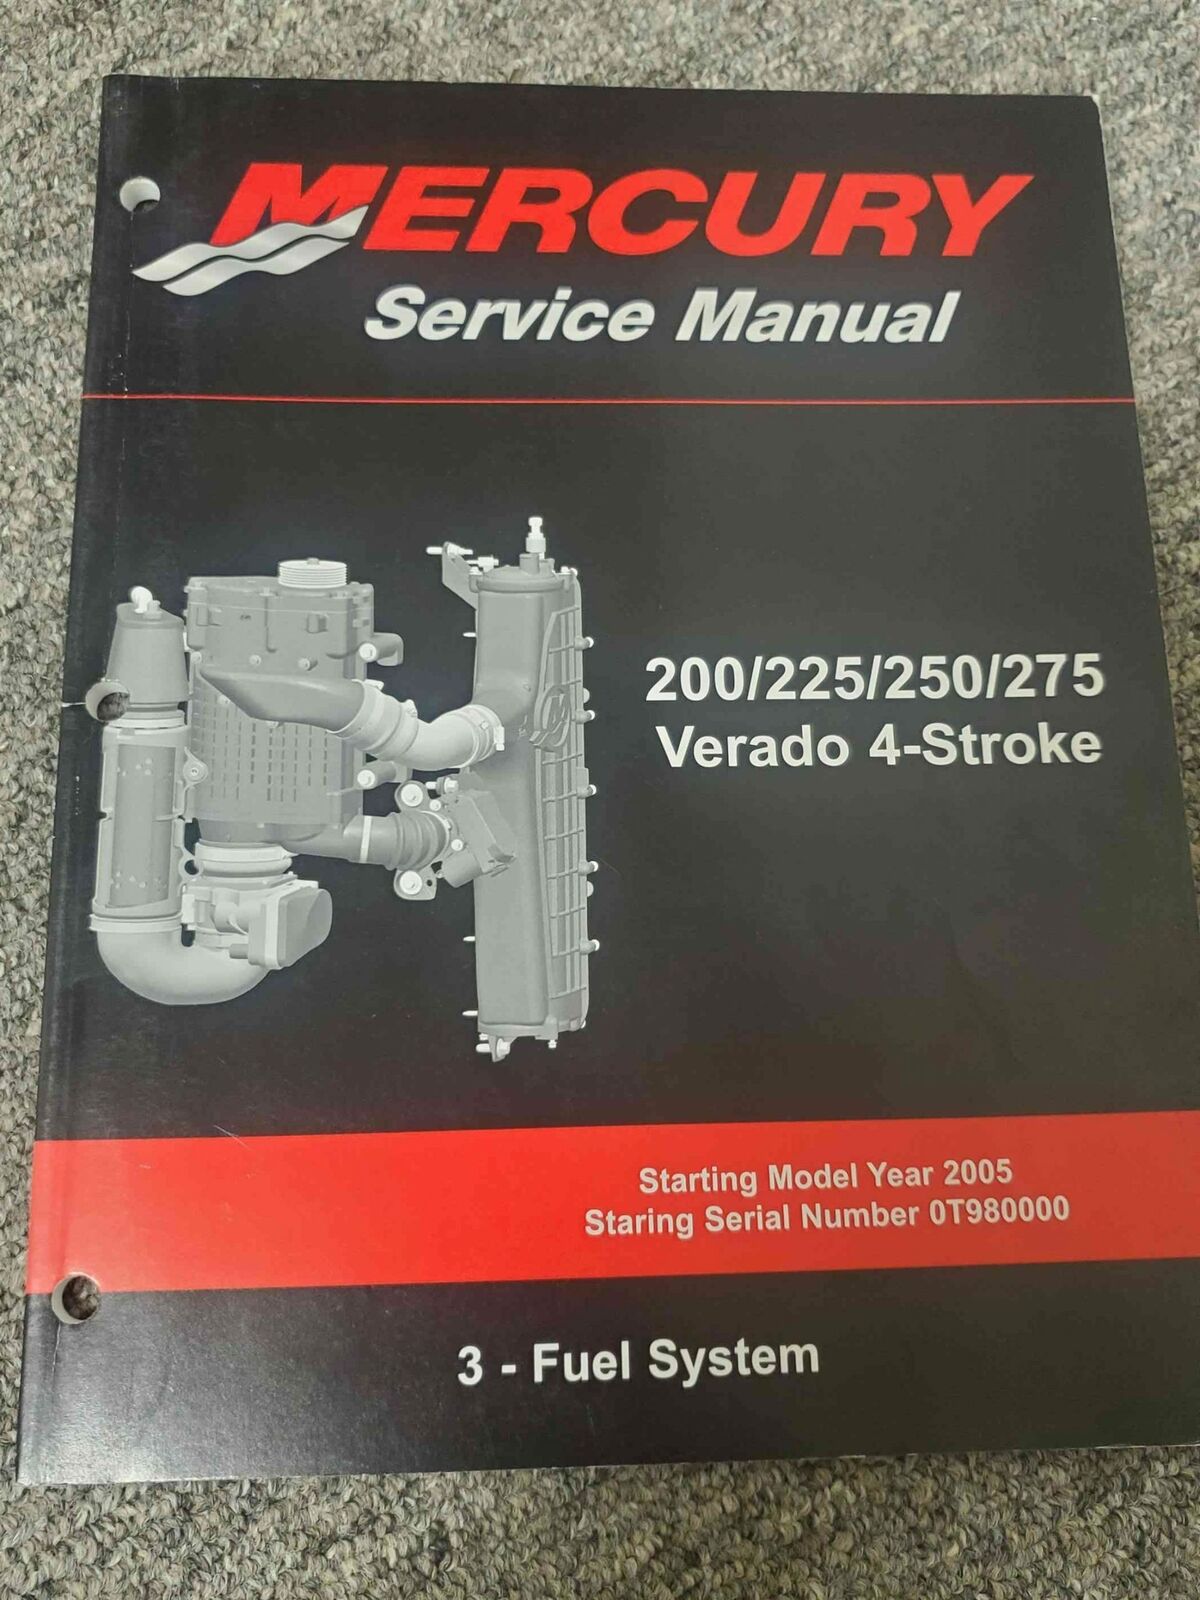 Mercury 200-275 Verado 4-Stroke Service Manual #3 Fuel System 90-896580300